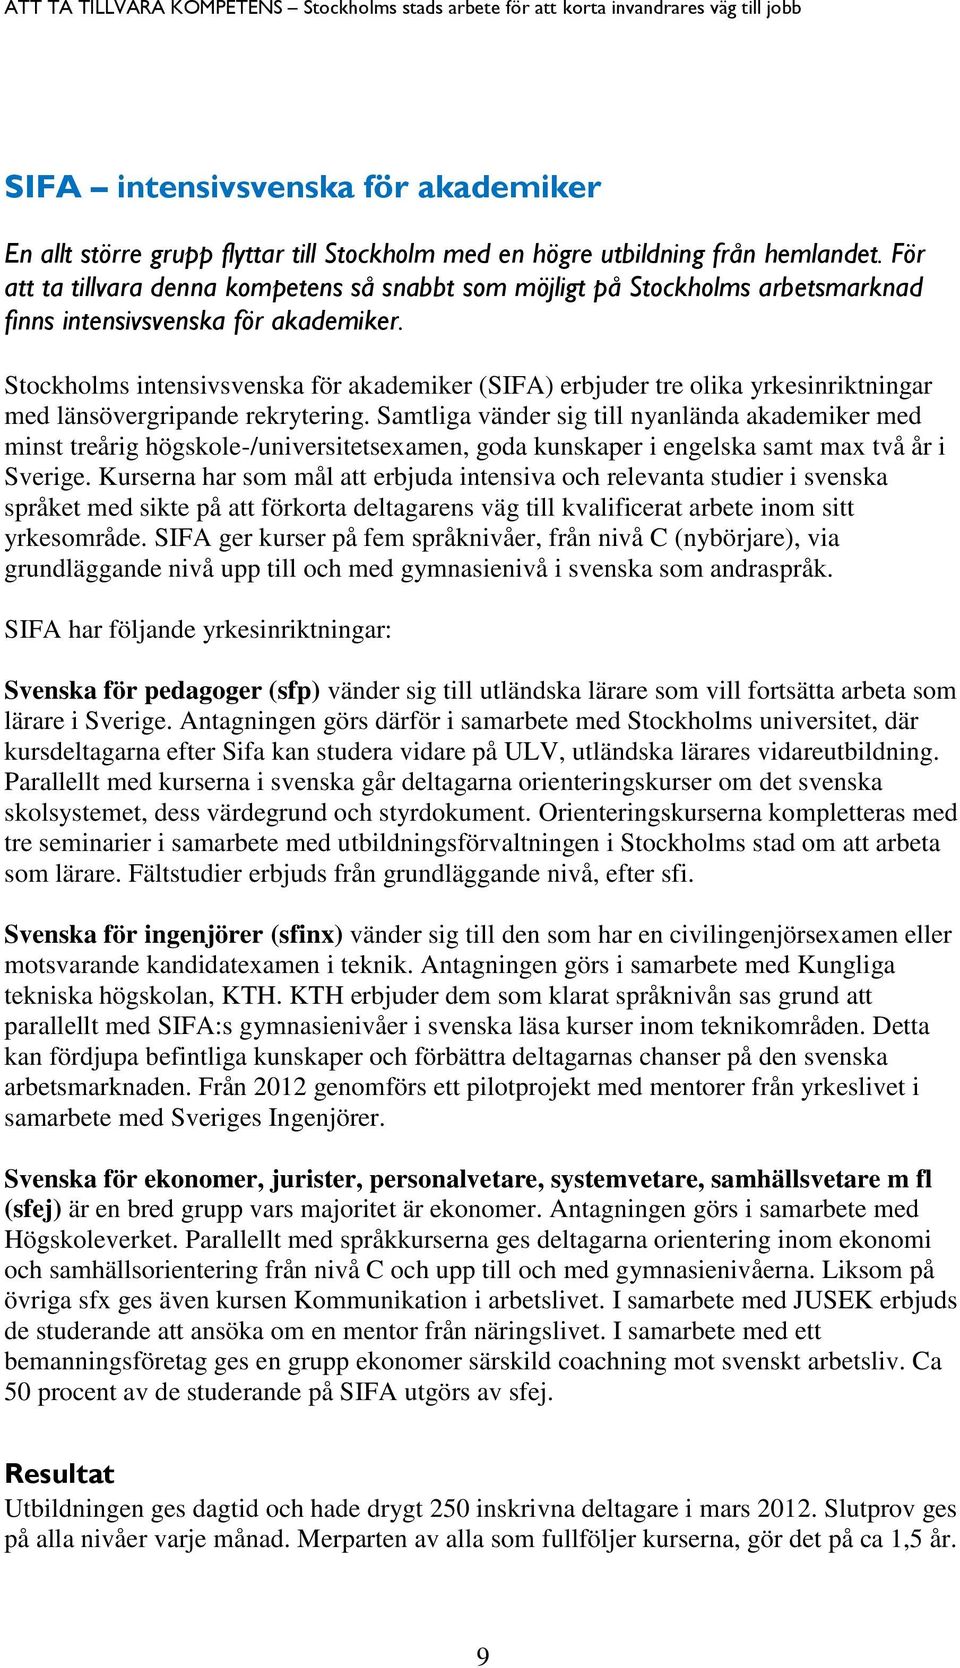 Stockholms intensivsvenska för akademiker (SIFA) erbjuder tre olika yrkesinriktningar med länsövergripande rekrytering.